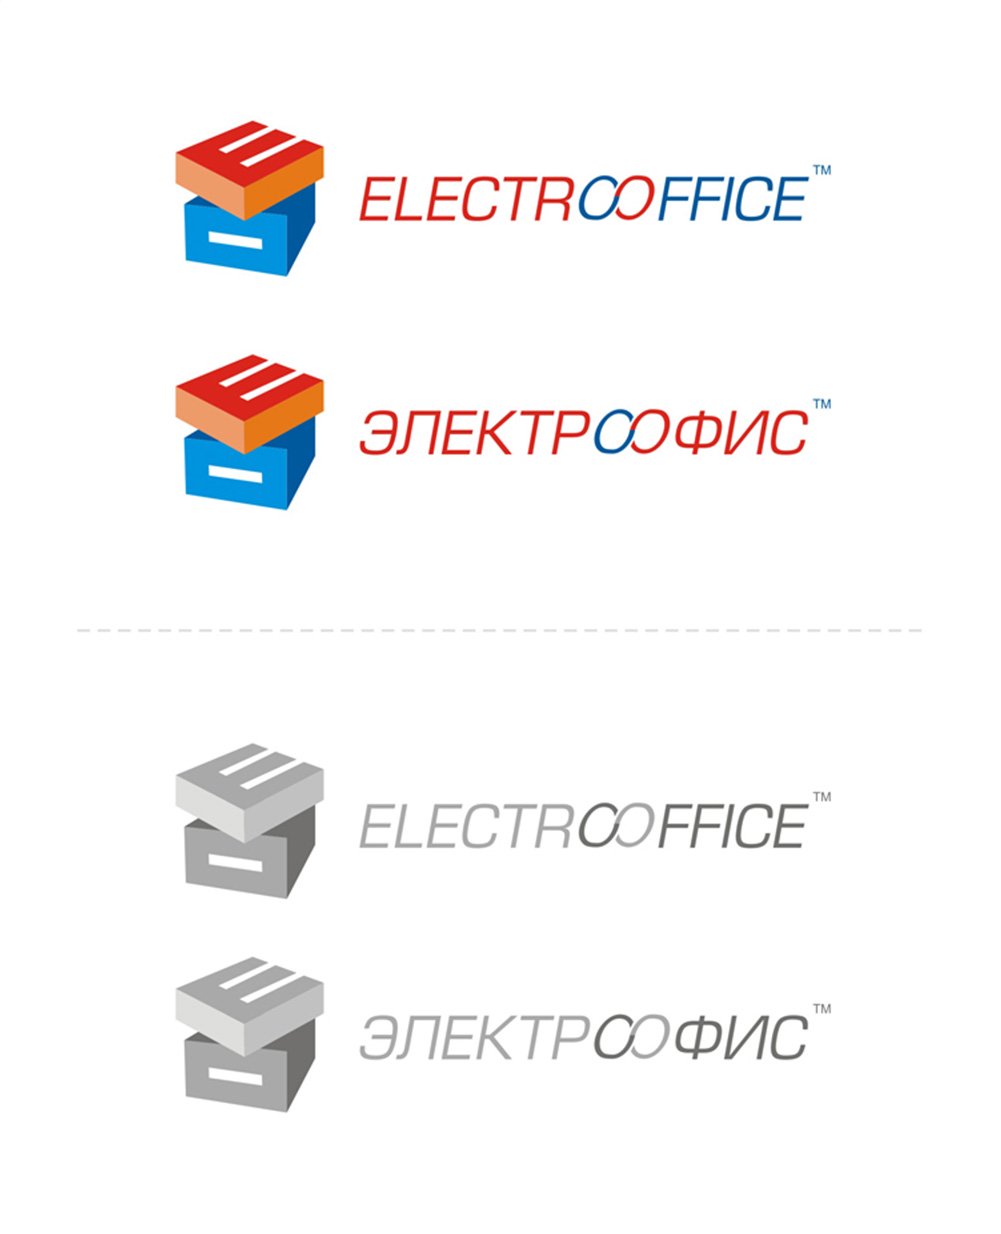 ElectroOffice logo